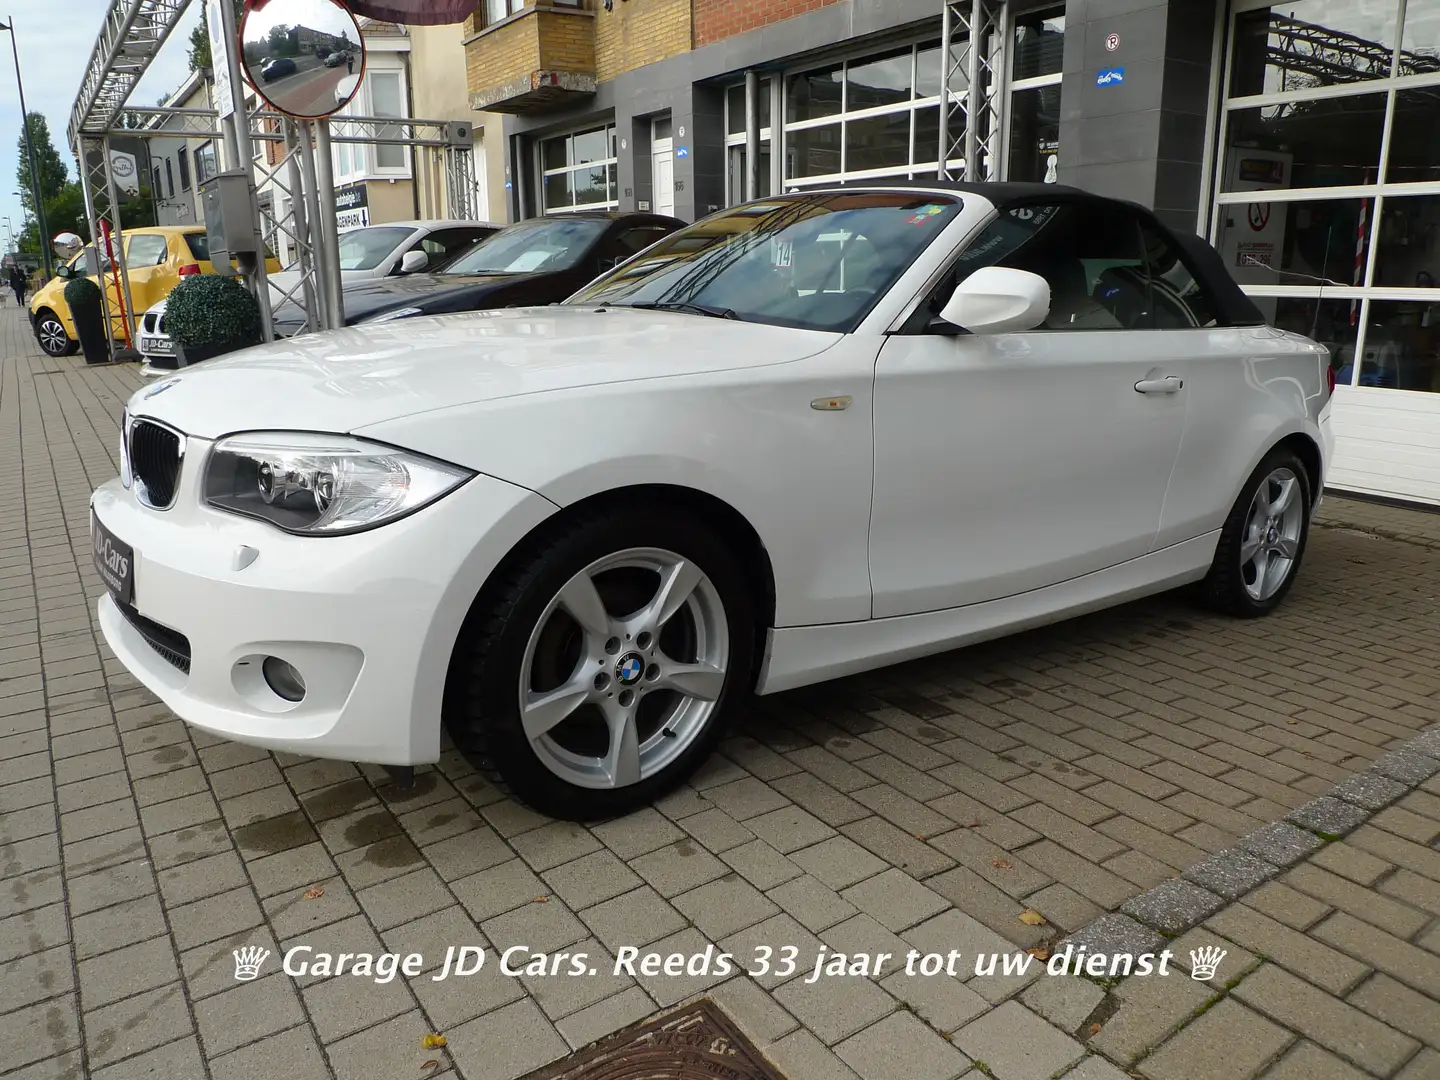 huurling Bezienswaardigheden bekijken Reserveren BMW 118 Cabriolet in Wit tweedehands in Harelbeke voor € 13.700,-